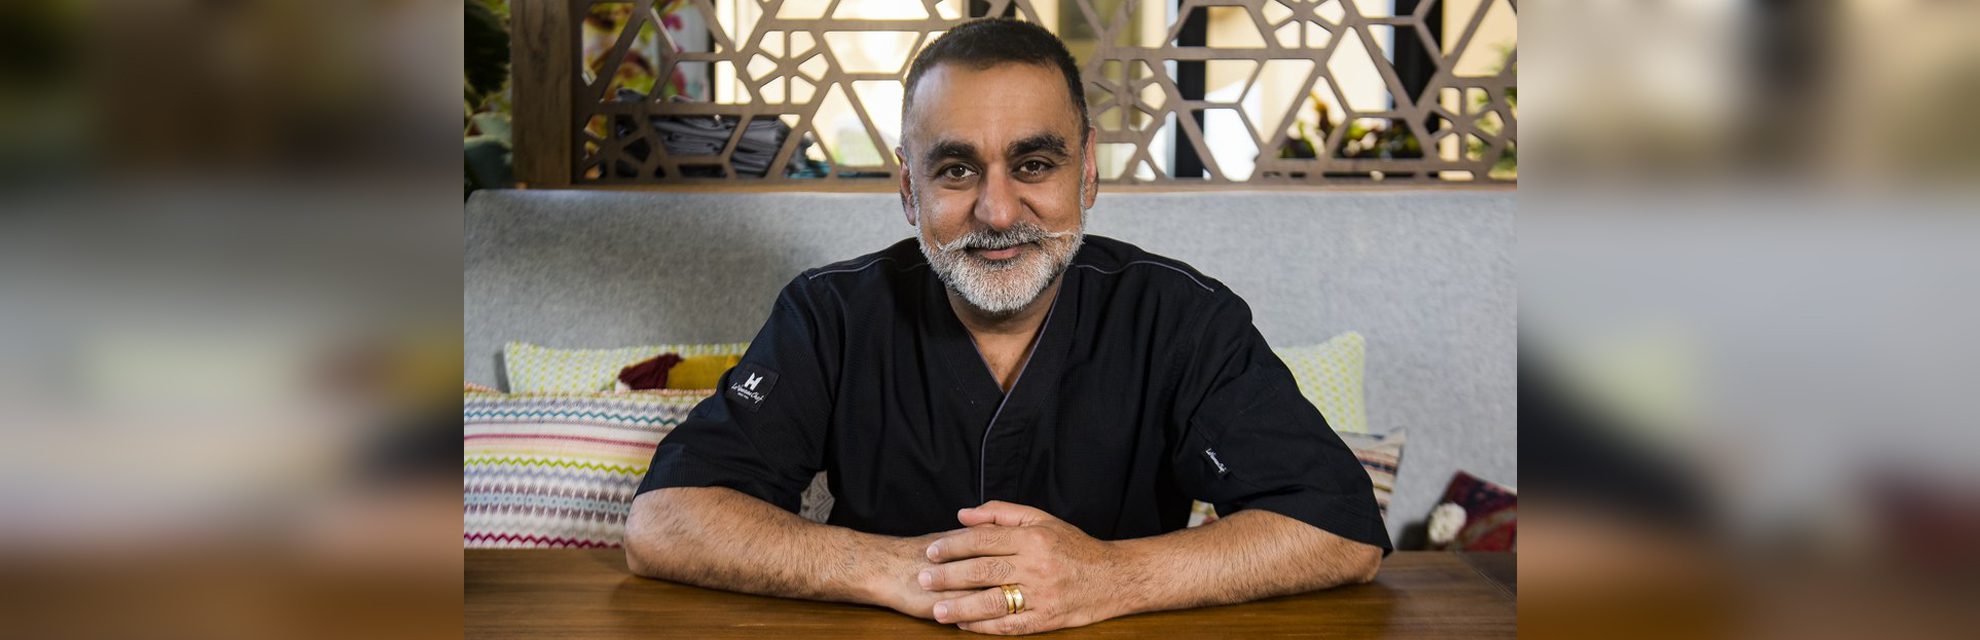 Van culinair ster tot sociaal activist: sterrenchef Vineet Bhatia heeft vele petten op